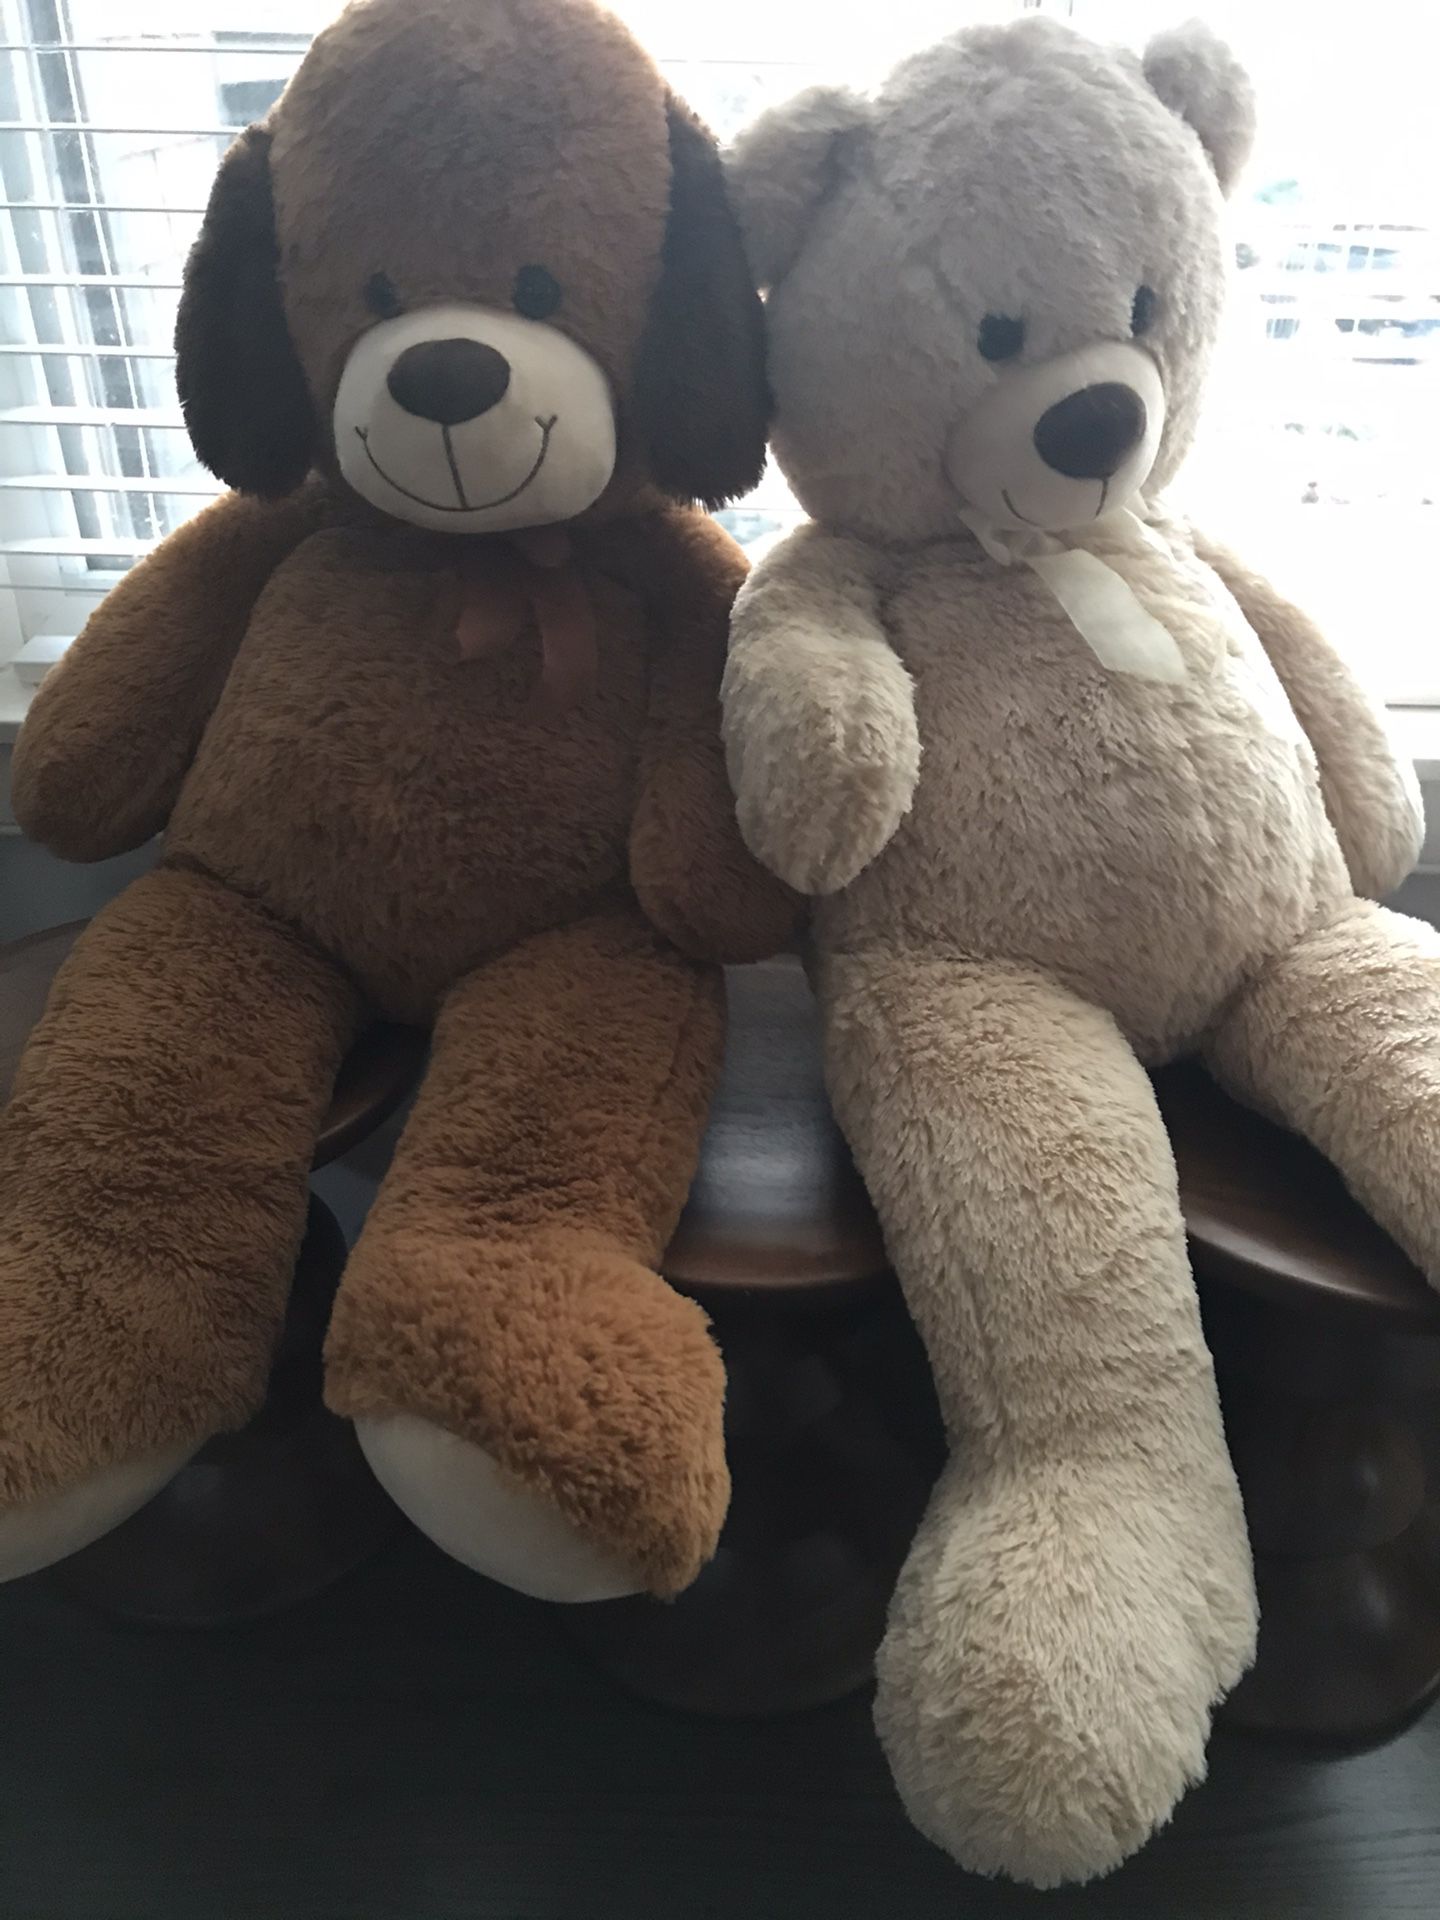 3’ Tall Giant Plush Teddy Bears - $20